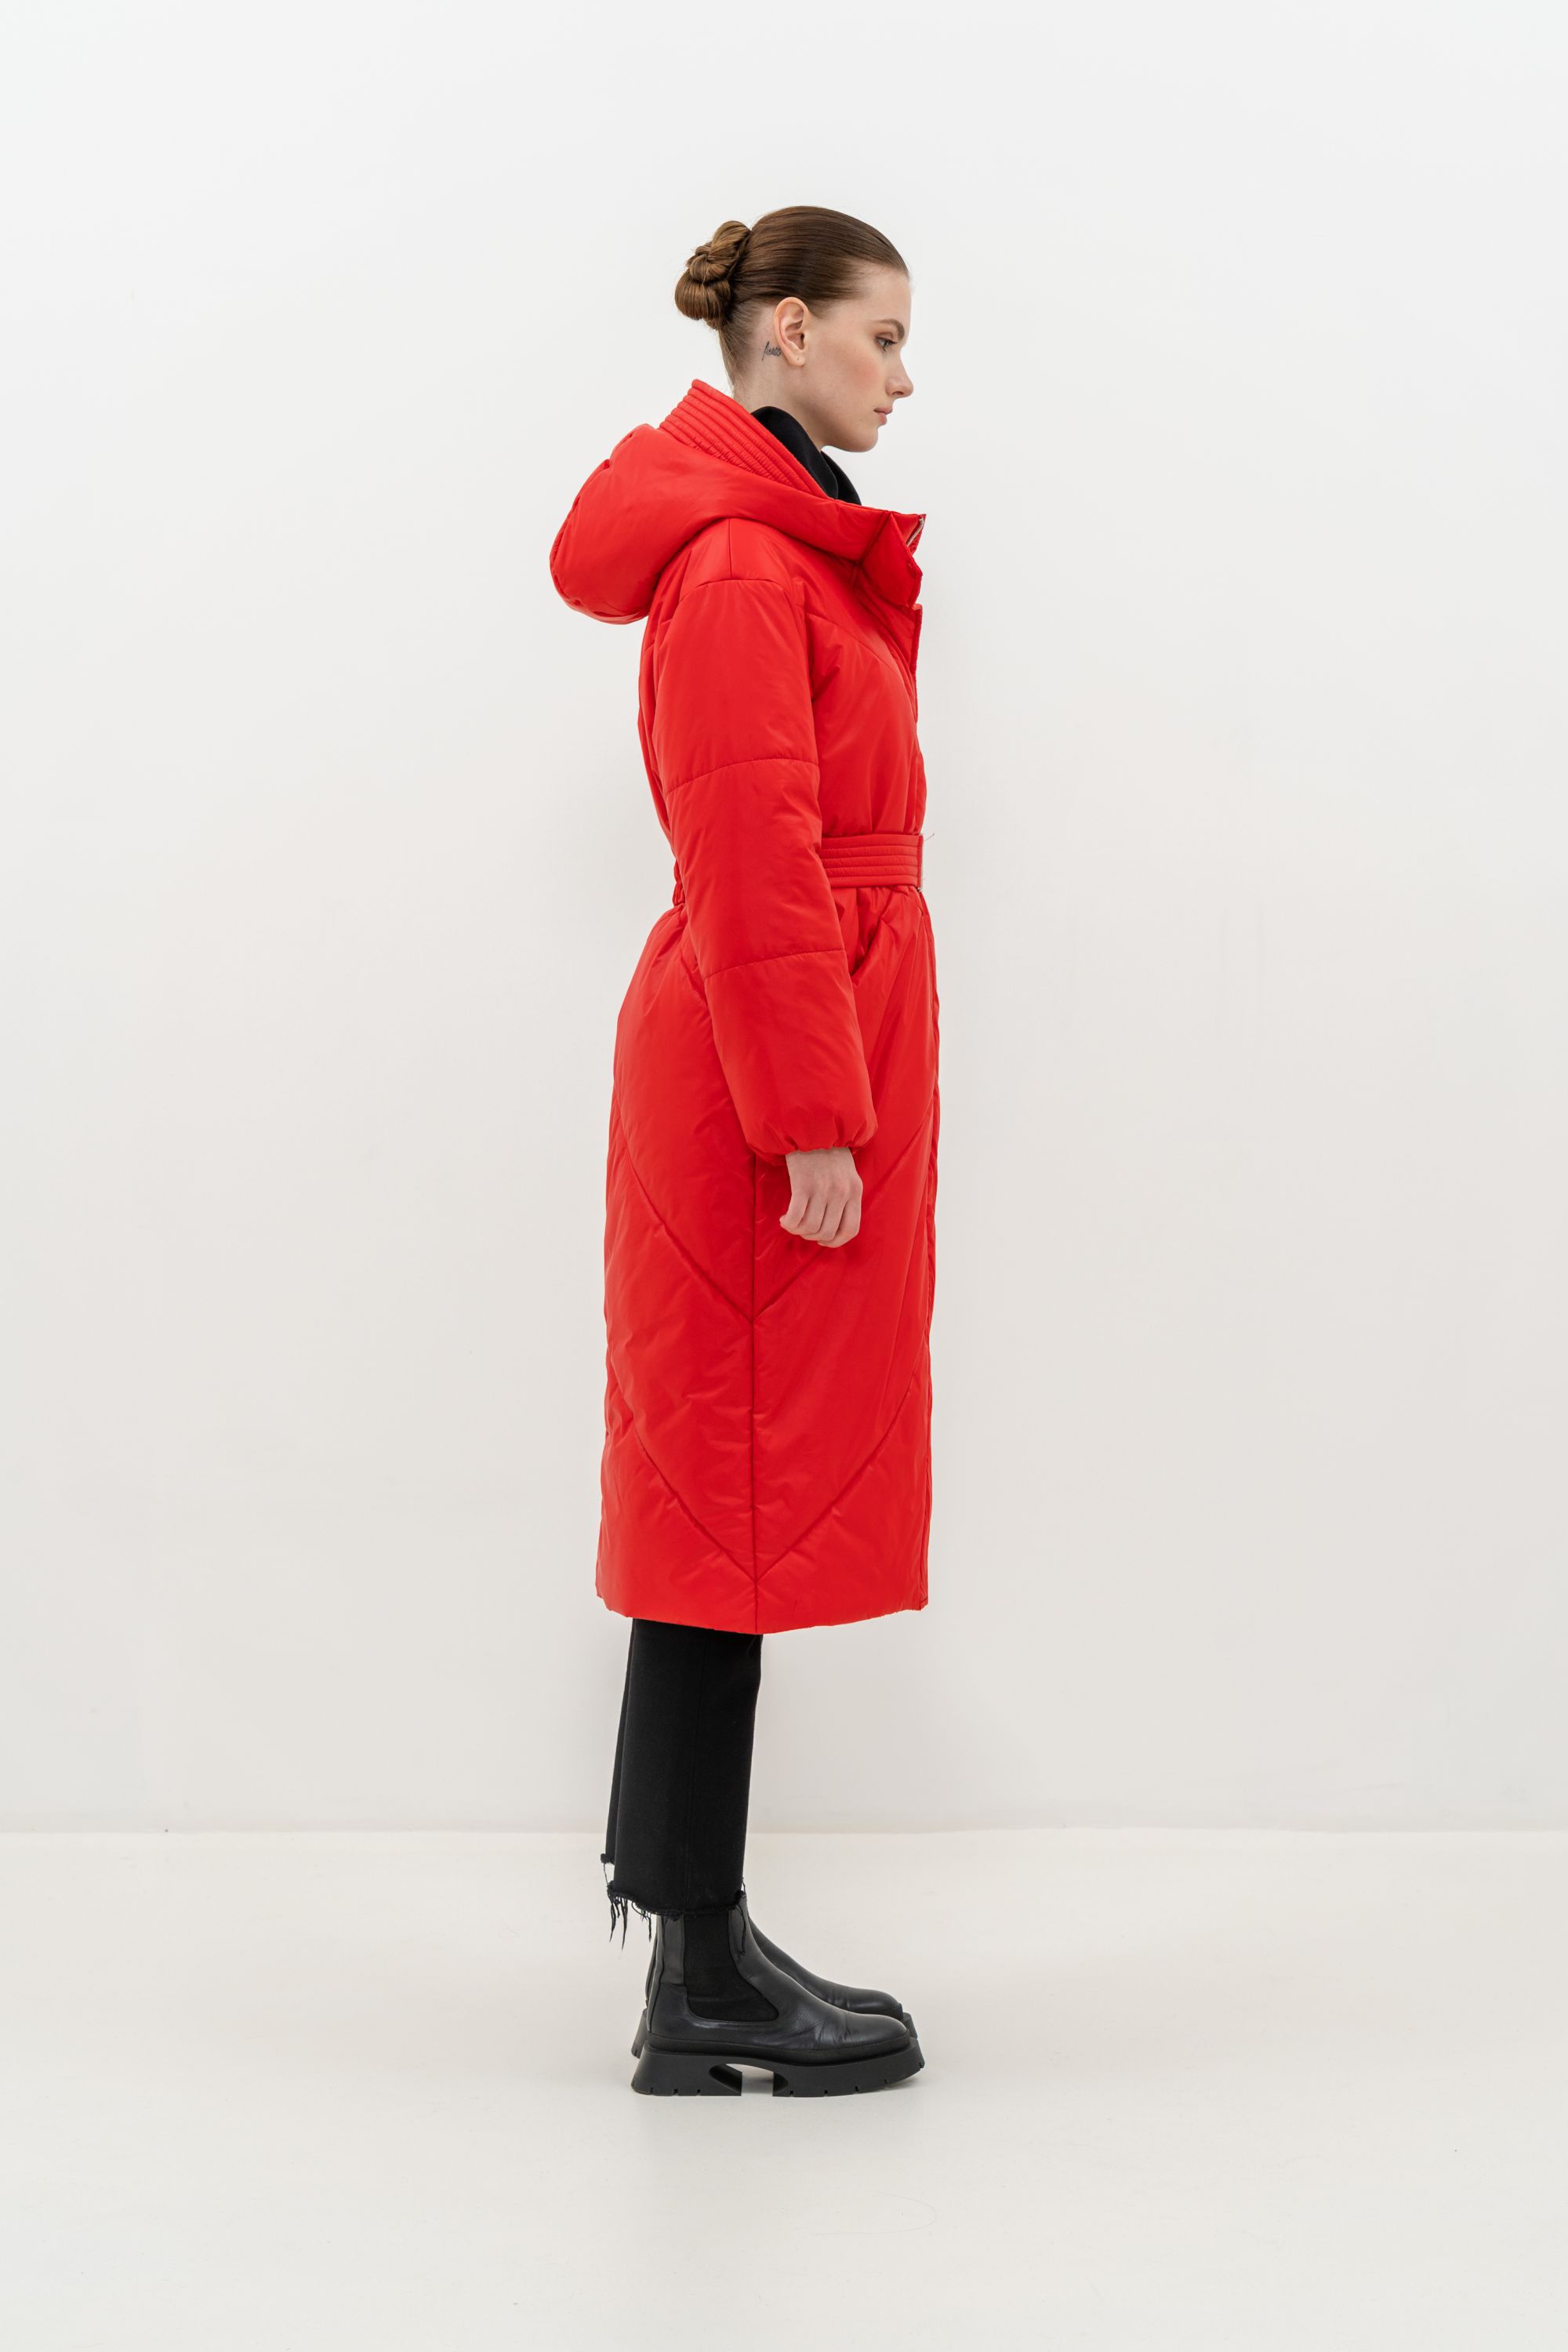 Пальто женское плащевое утепленное 5-12174-1. Фото 3.